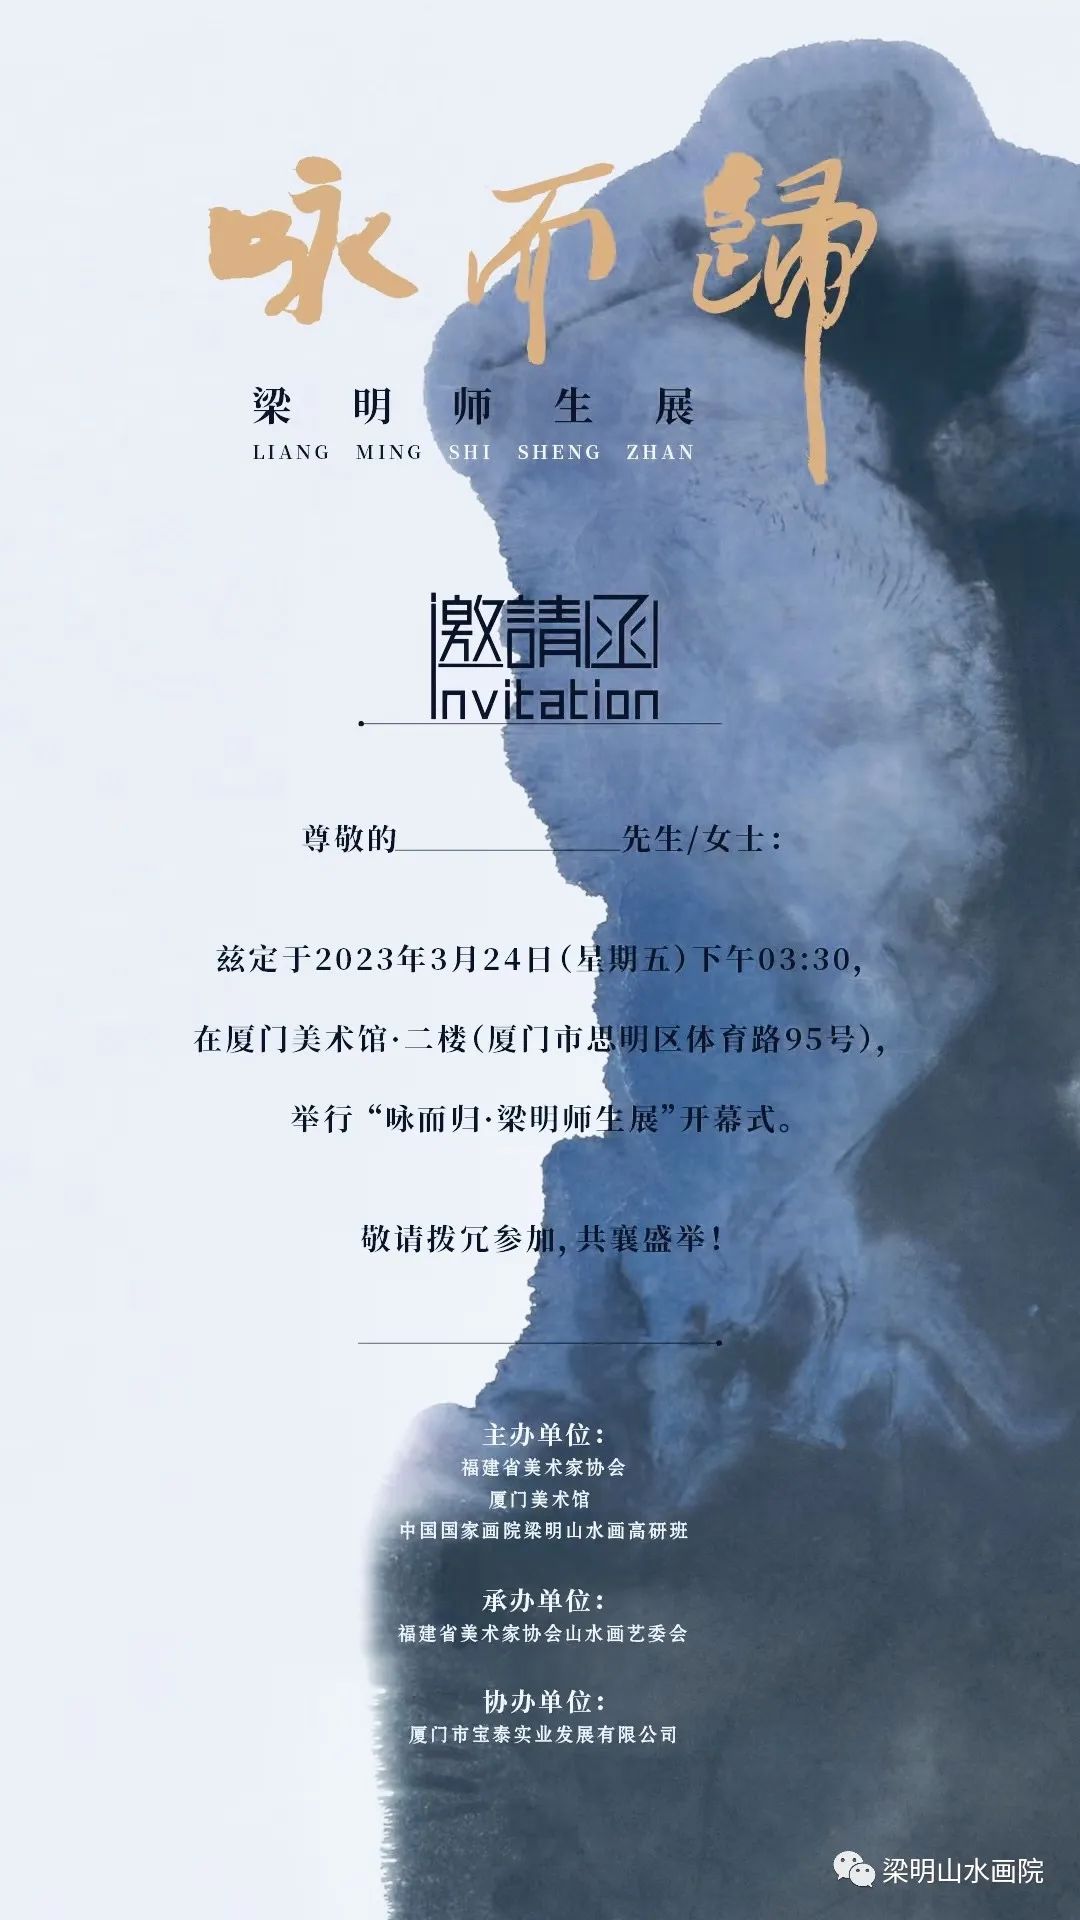 “咏而归·梁明师生展”3月24日将在厦门开幕